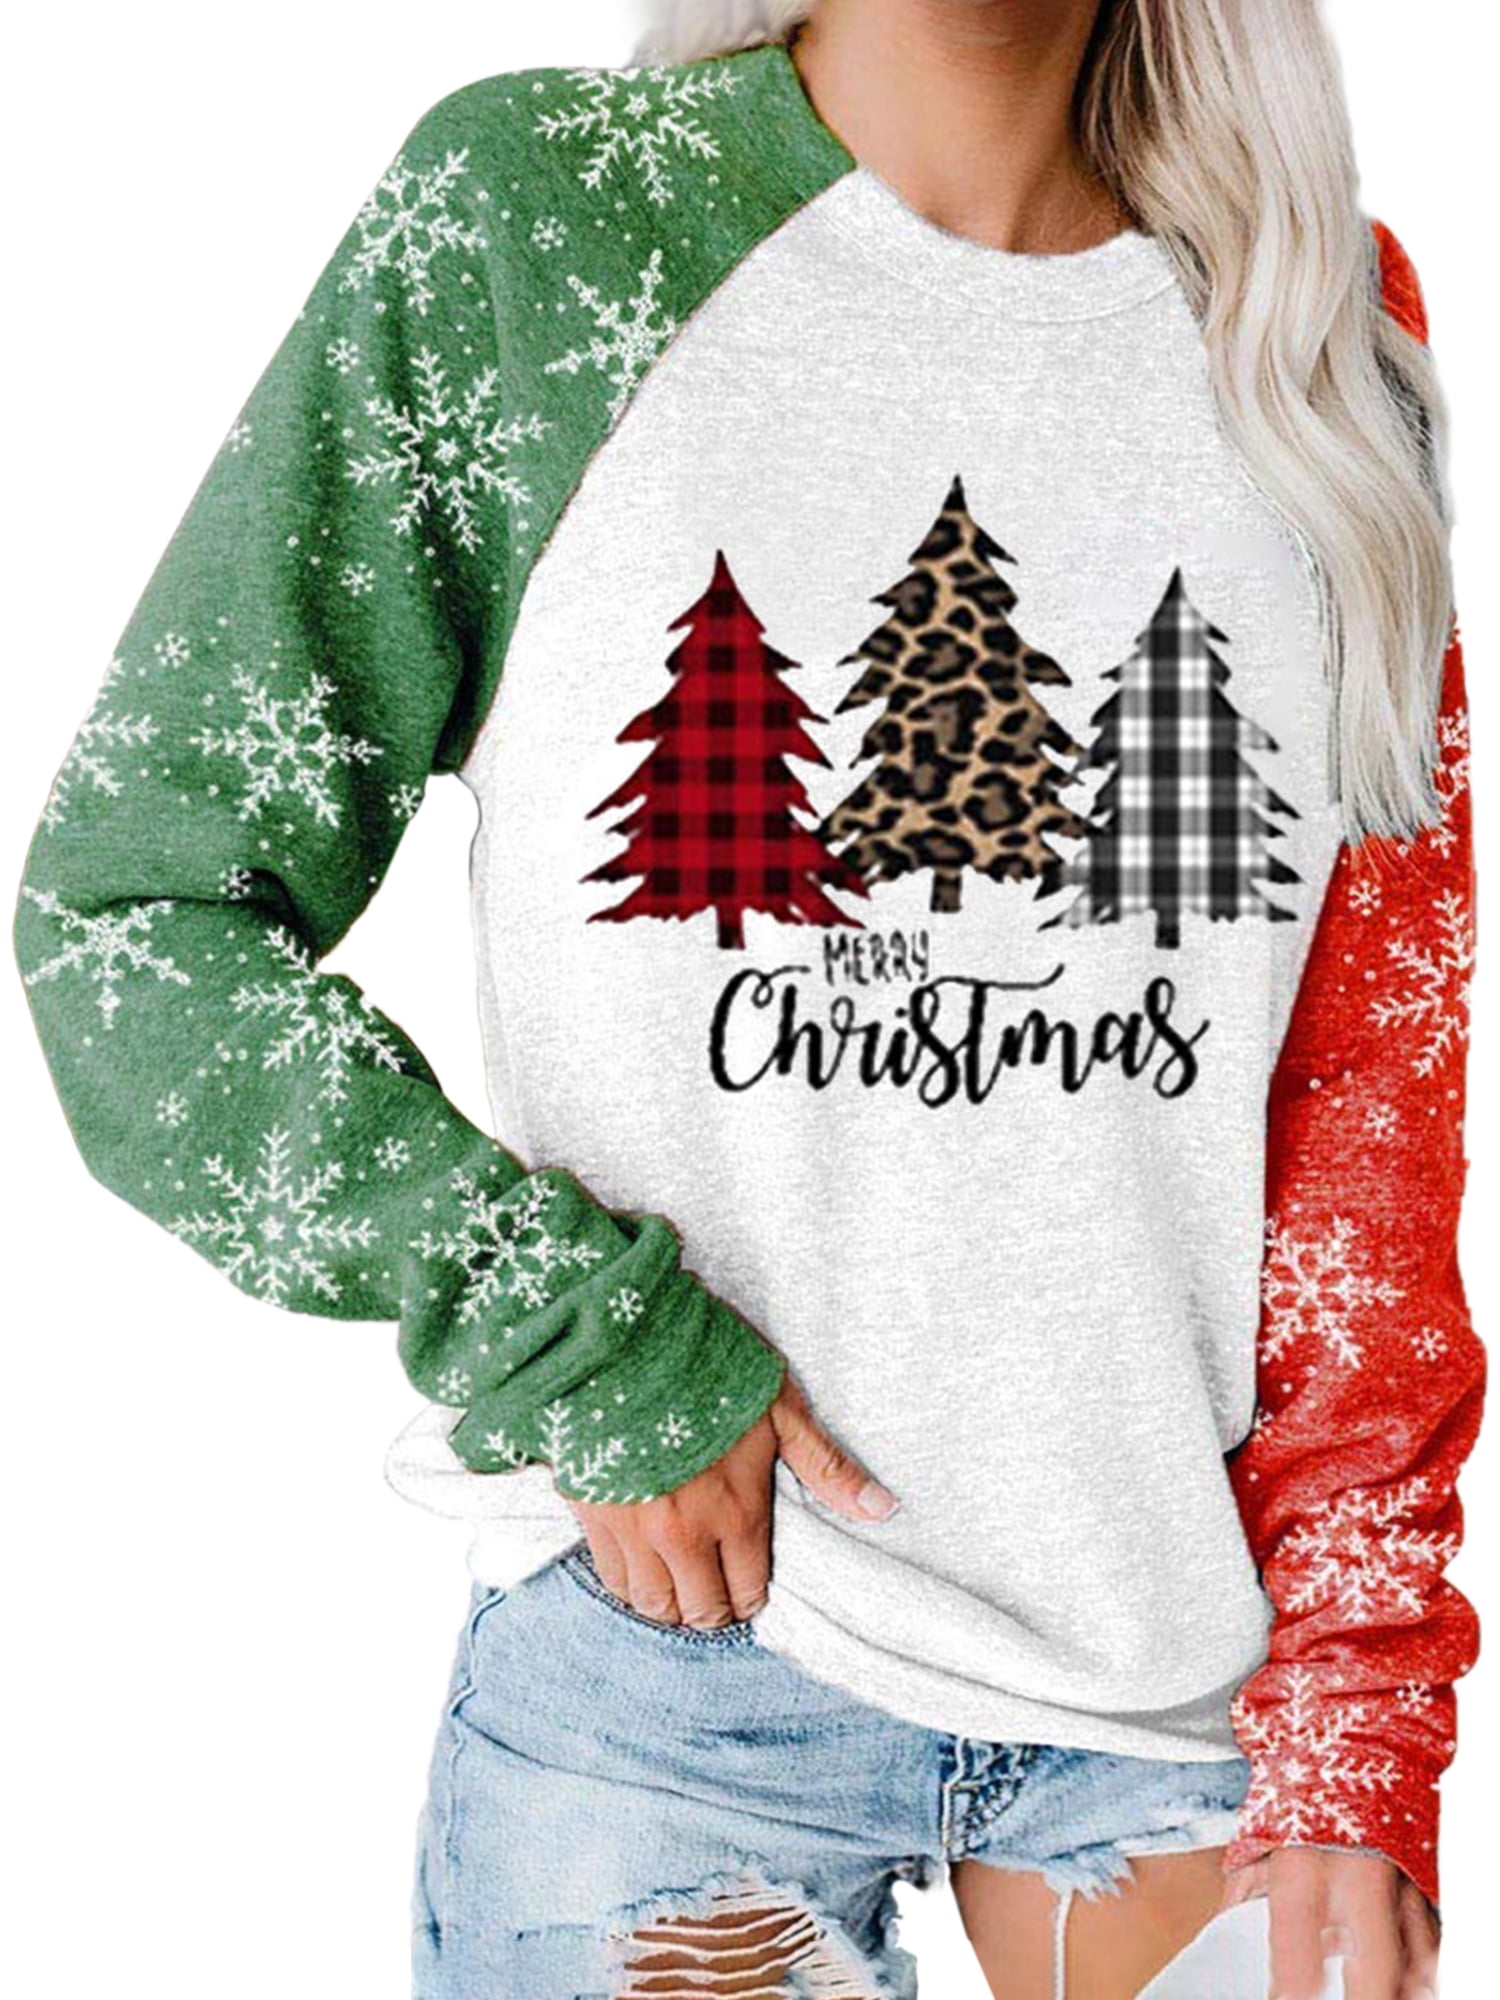 Rustic Christmas Shirt,Holiday Christmas Shirt. Gift for Christmas T-Shirt Christmas Graphic Shirt Rustic Christmas Tree Racerback Tank